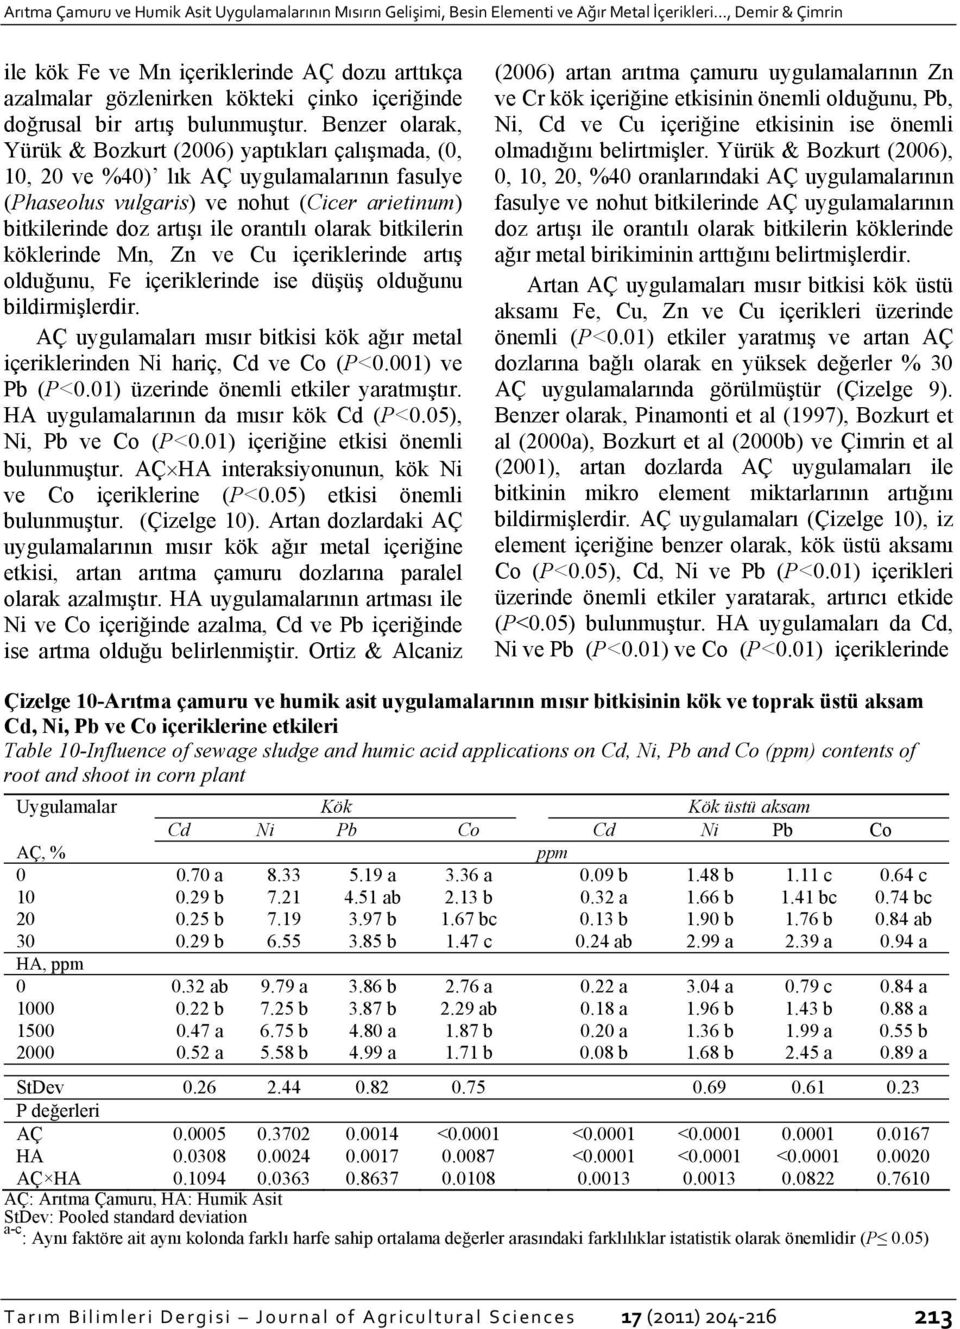 Benzer olarak, Yürük & Bozkurt (2006) yaptıkları çalışmada, (0, 10, 20 ve %40) lık AÇ uygulamalarının fasulye (Phaseolus vulgaris) ve nohut (Cicer arietinum) bitkilerinde doz artışı ile orantılı